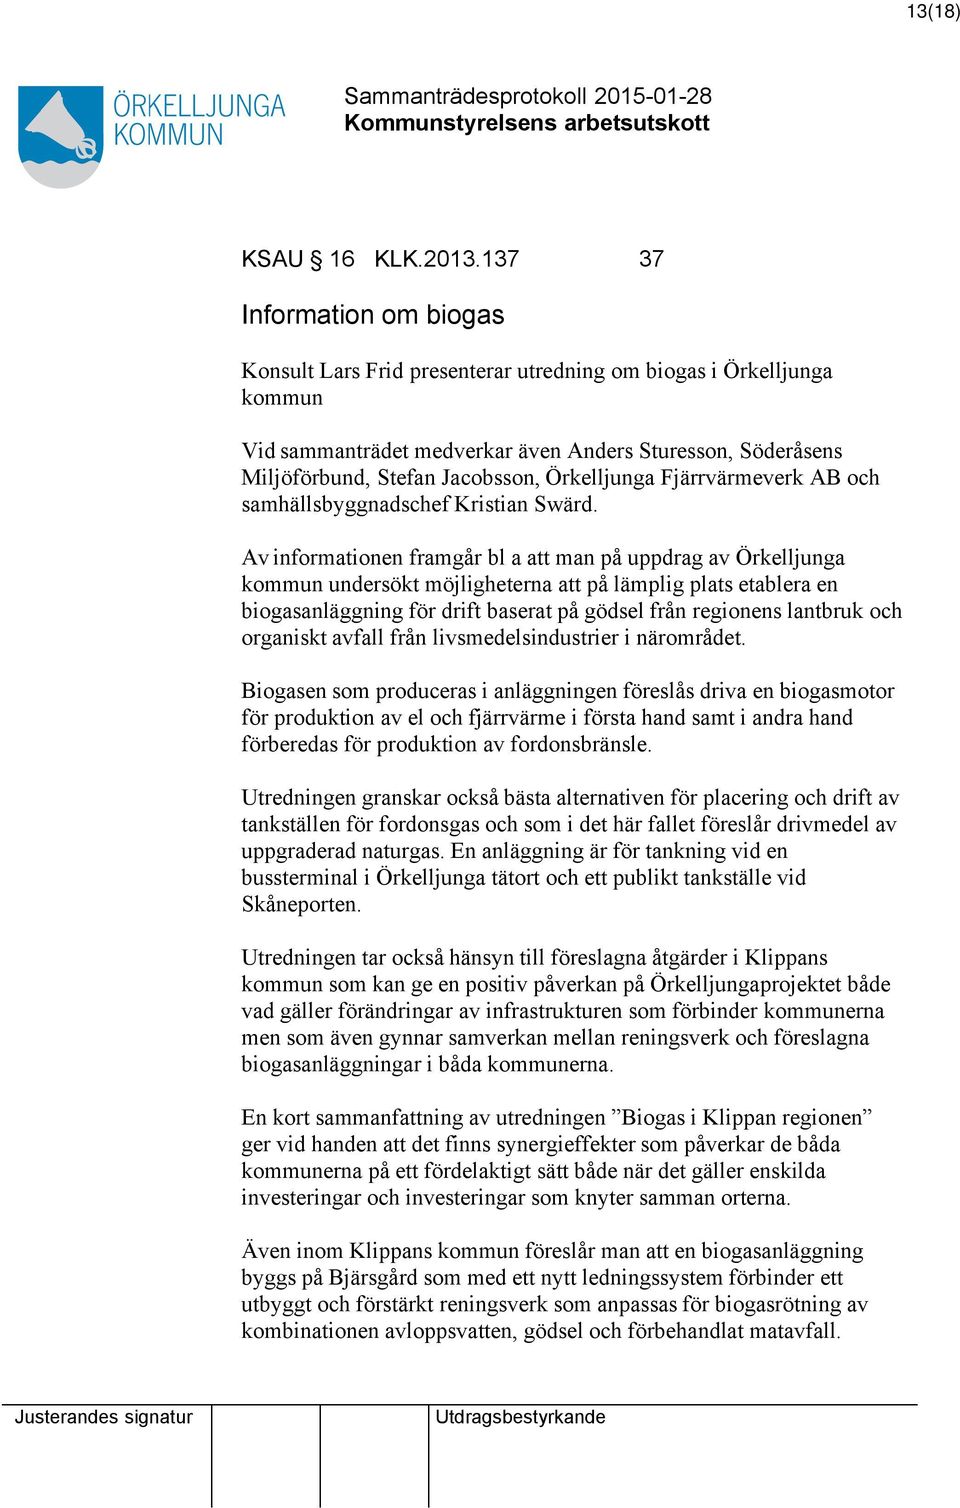 Örkelljunga Fjärrvärmeverk AB och samhällsbyggnadschef Kristian Swärd.